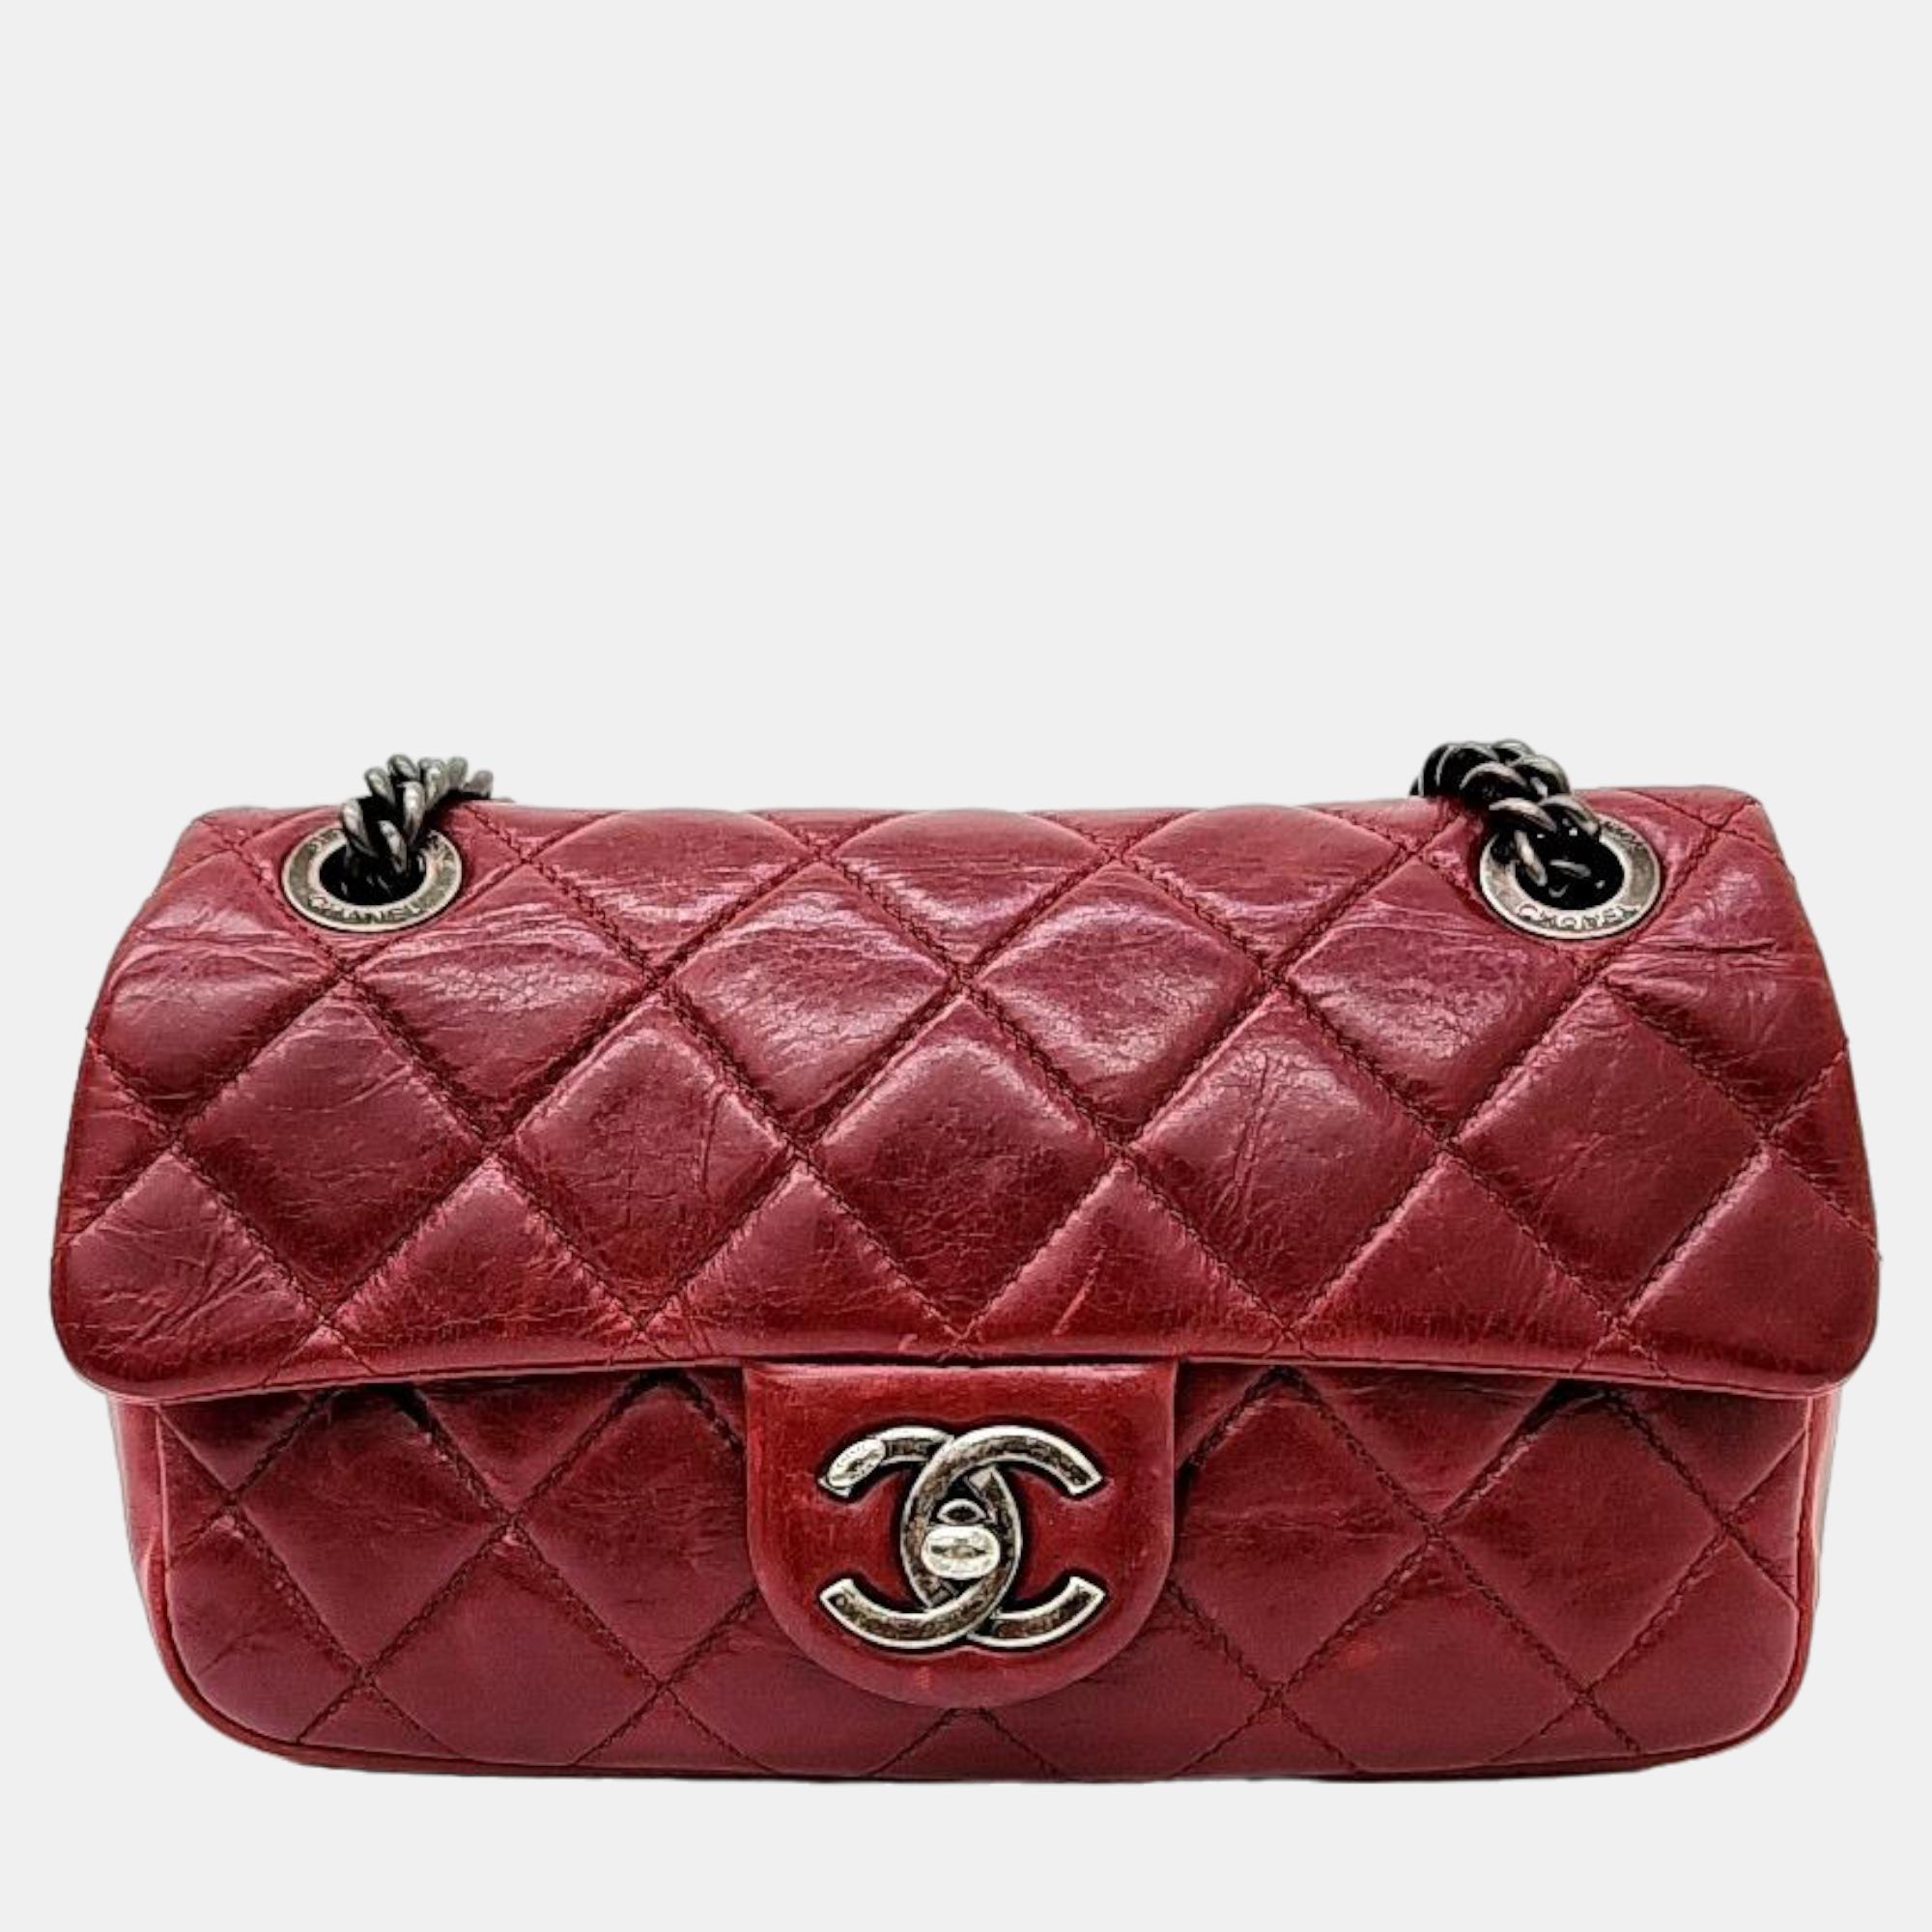 Chanel red leather vintage chain shoulder bag